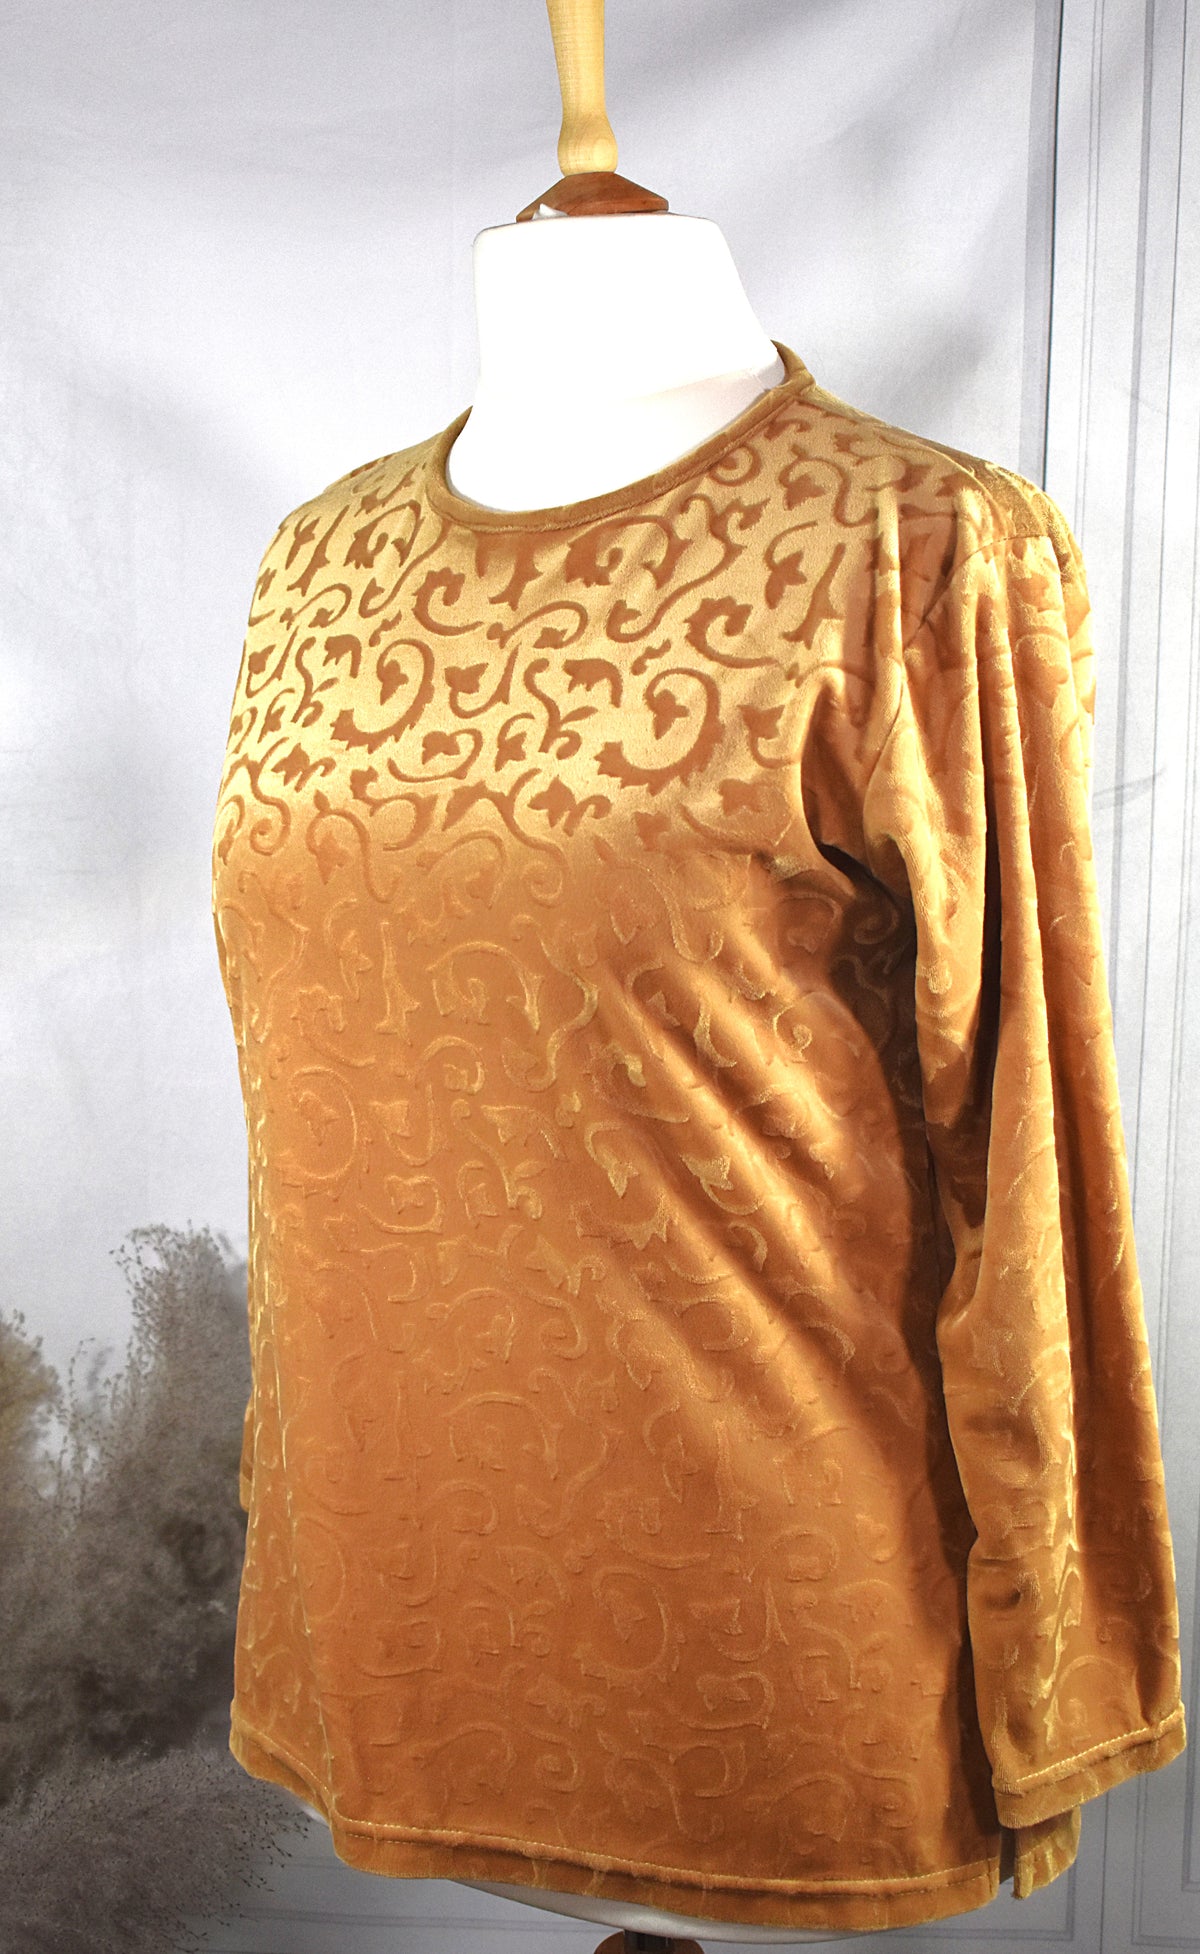 T-shirt velours doré aux motifs baroques